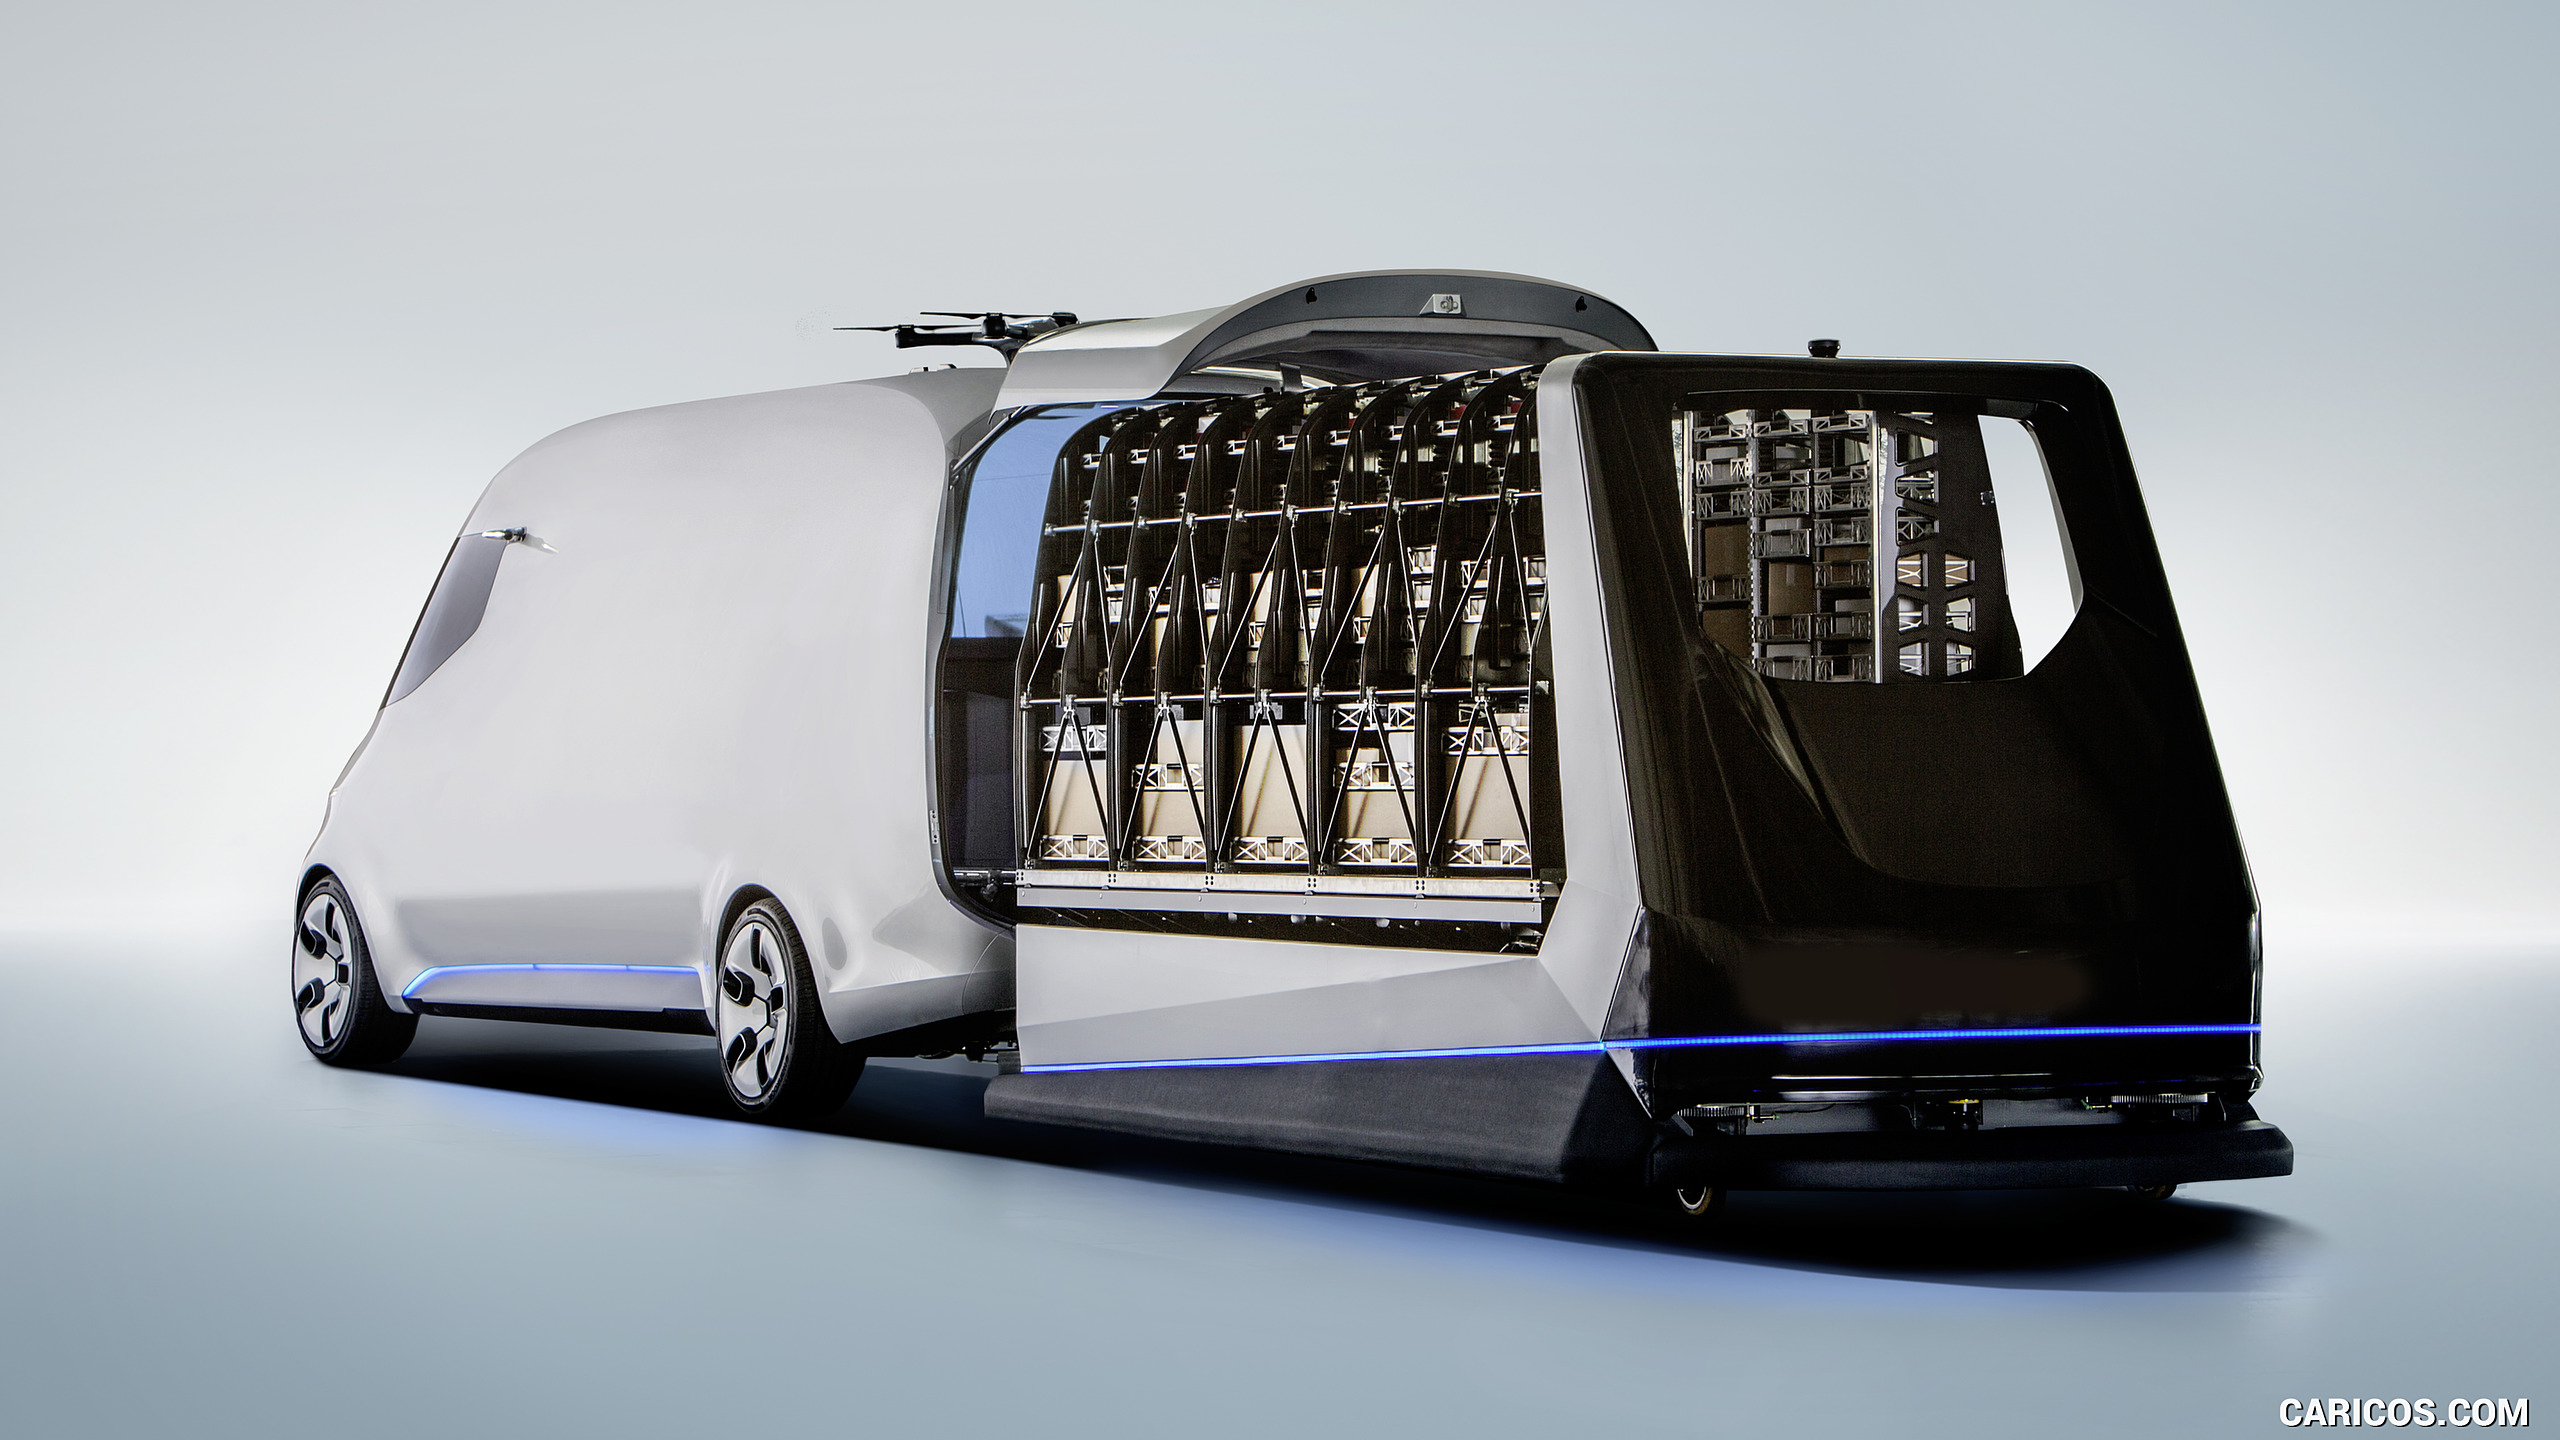 2016 Mercedes-Benz Vision Van Concept - Unloading of Cargo, #10 of 19